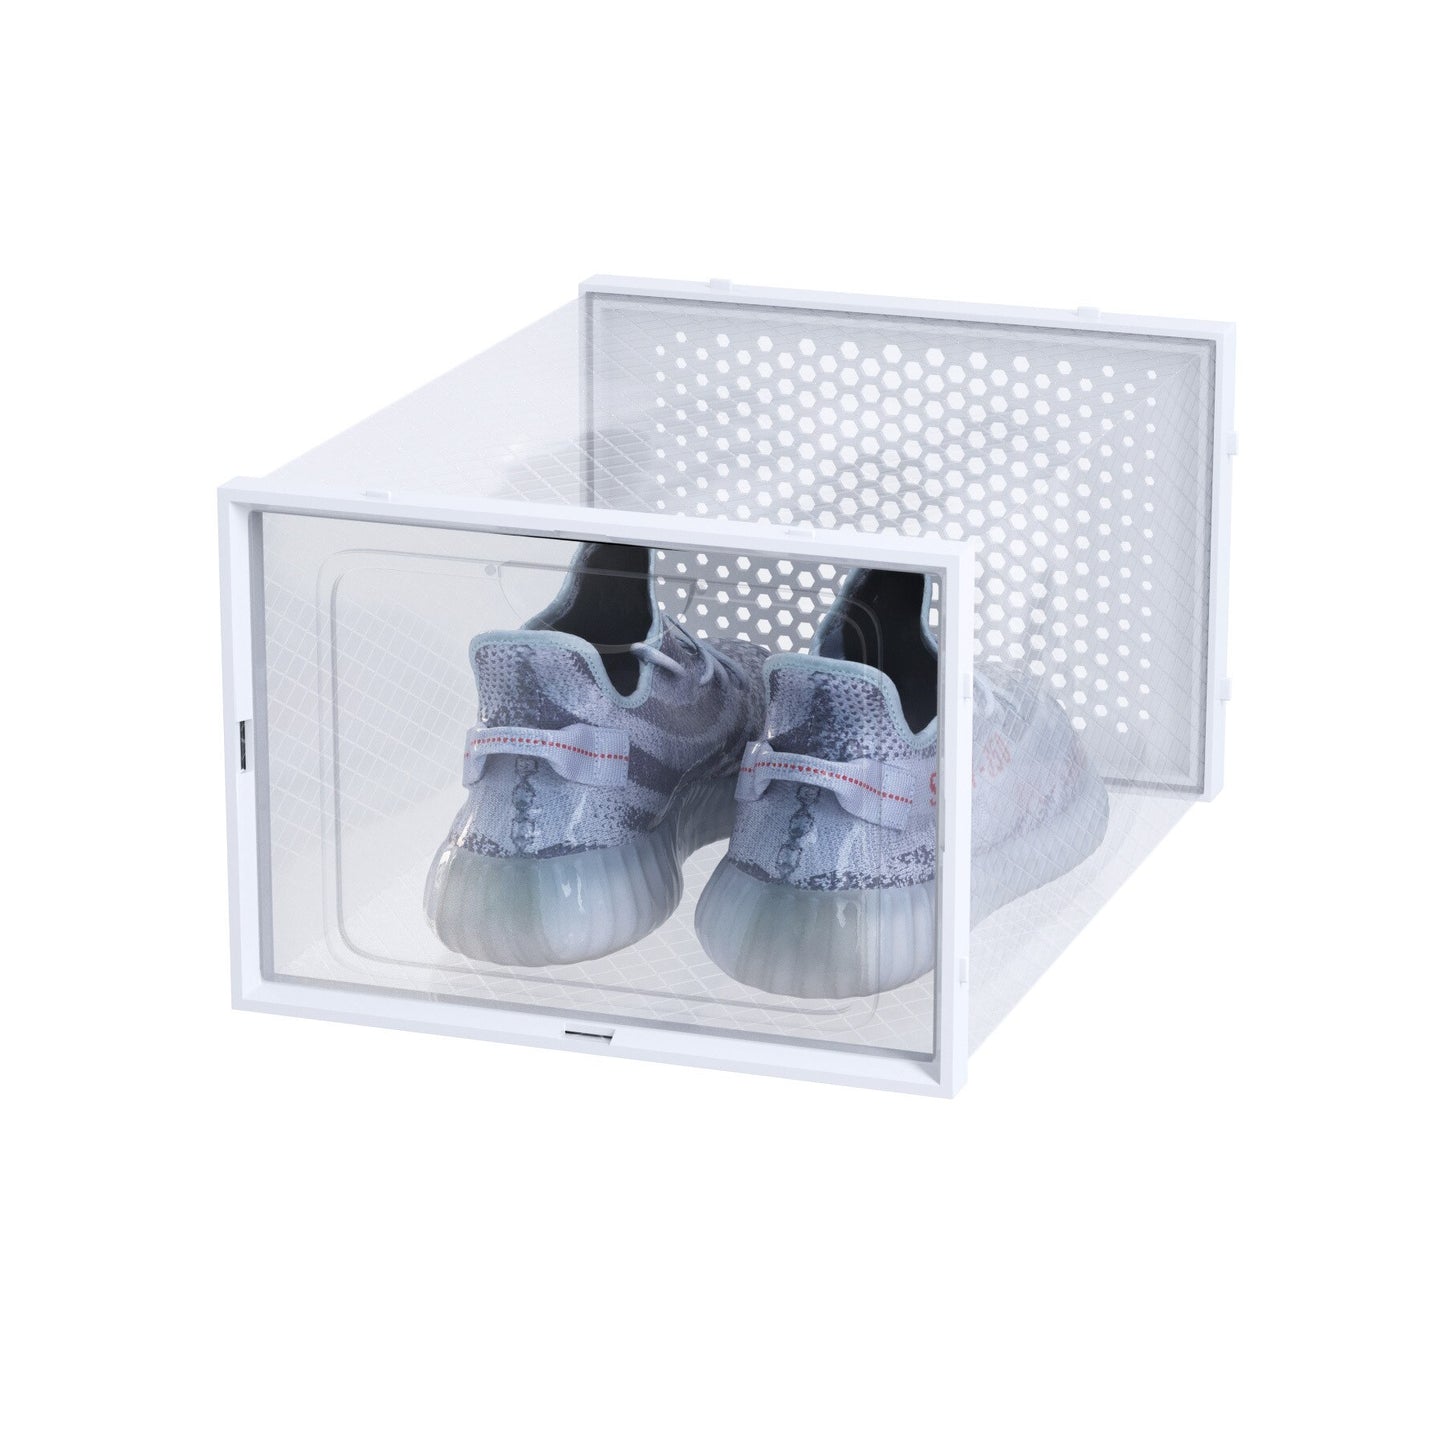 Large double frame plastic transparent shoebox Amazon popular folding storage box dustproof waterproof pp basketball shoebox